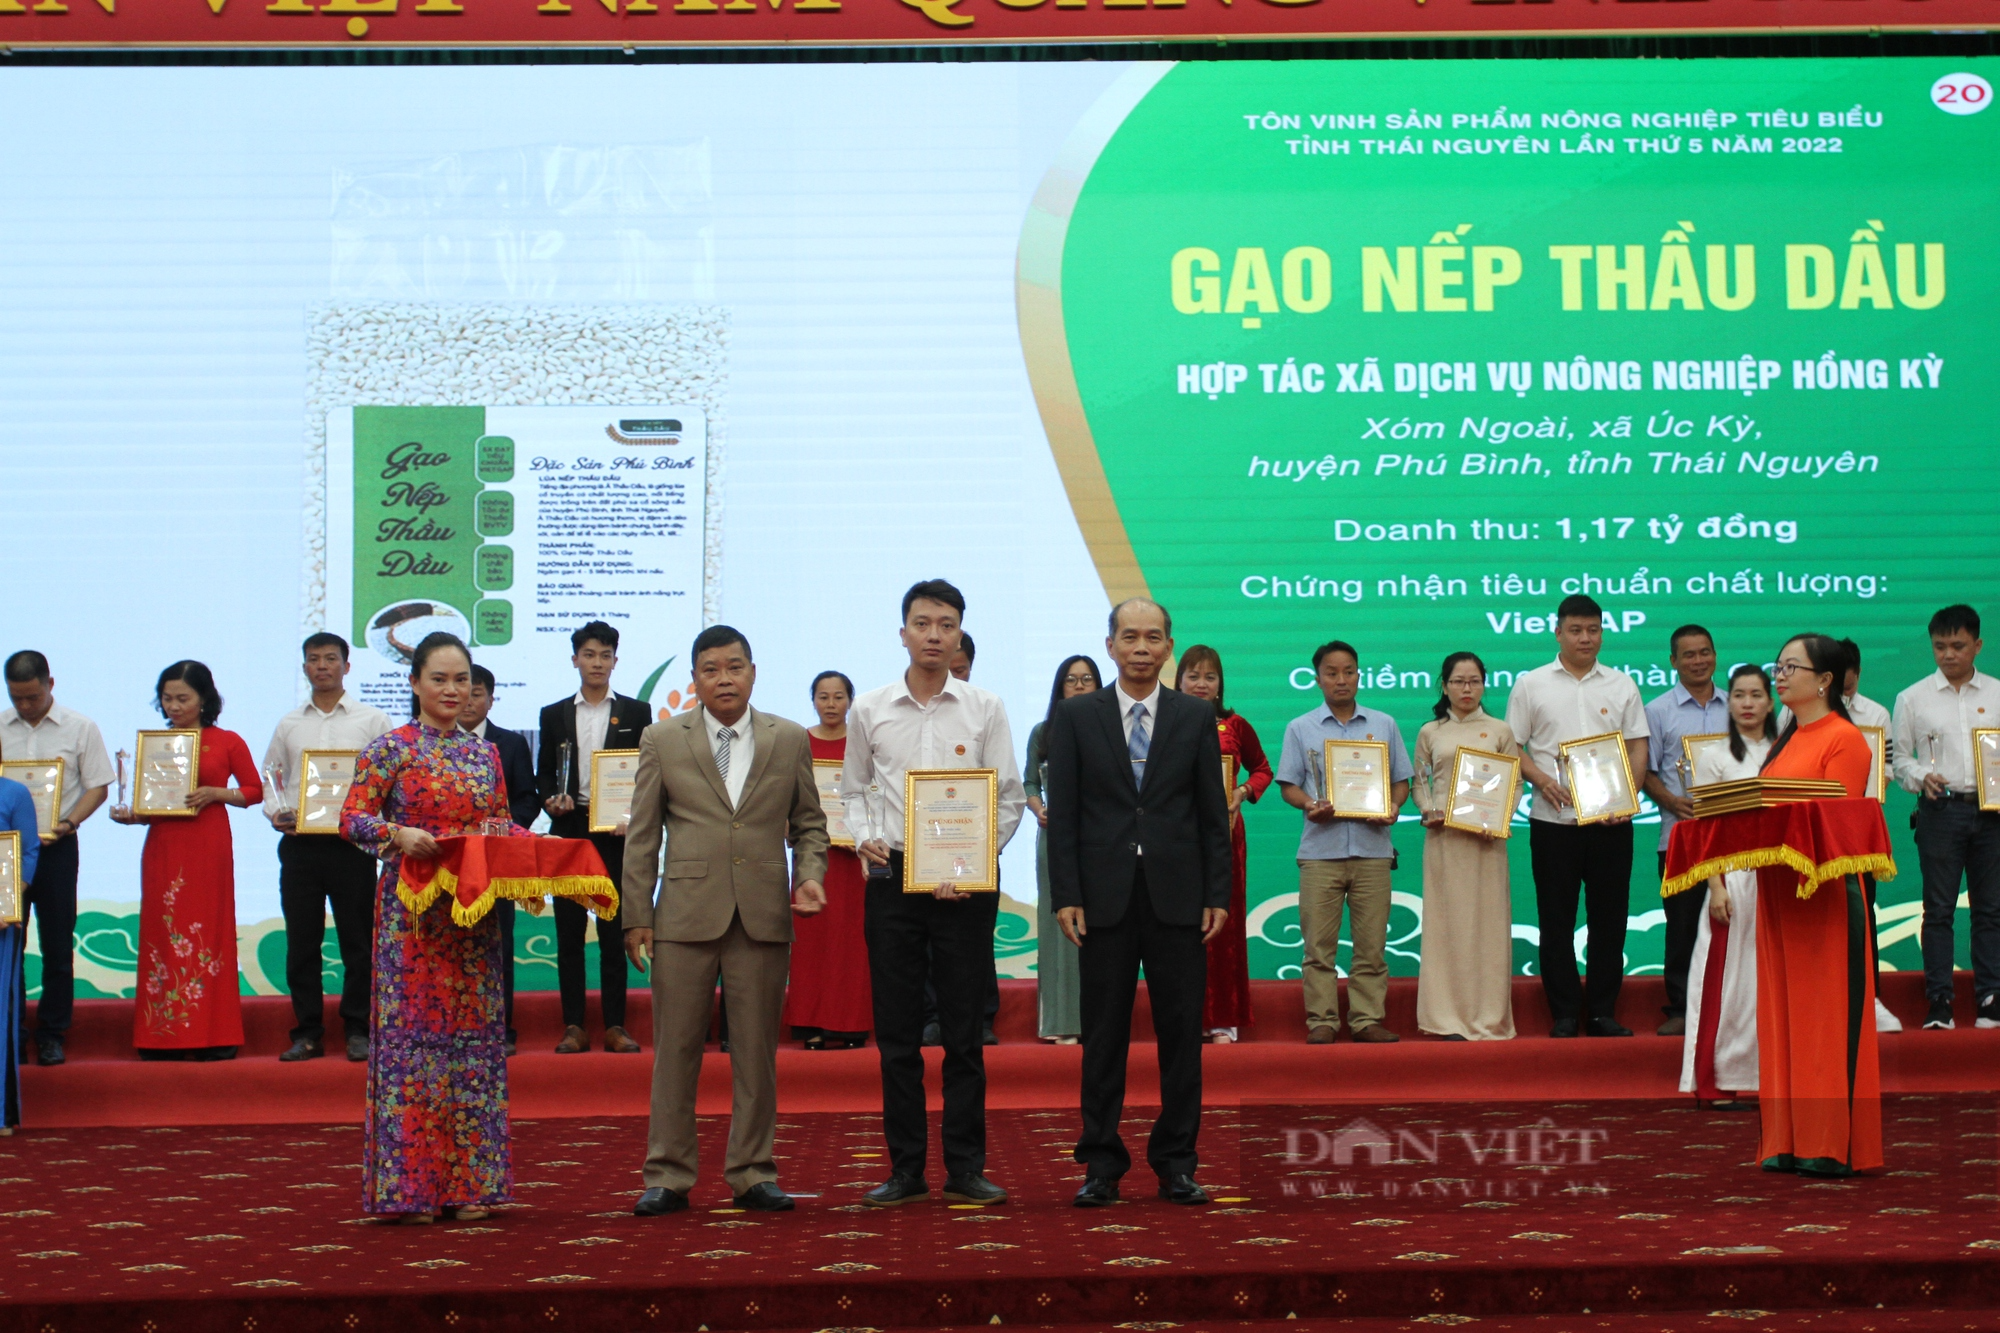 HND Thái Nguyên ứng dụng chuyển đổi số trong bình chọn, đánh giá chất lượng sản phẩm nông nghiệp tiêu biểu năm 2023 - Ảnh 2.